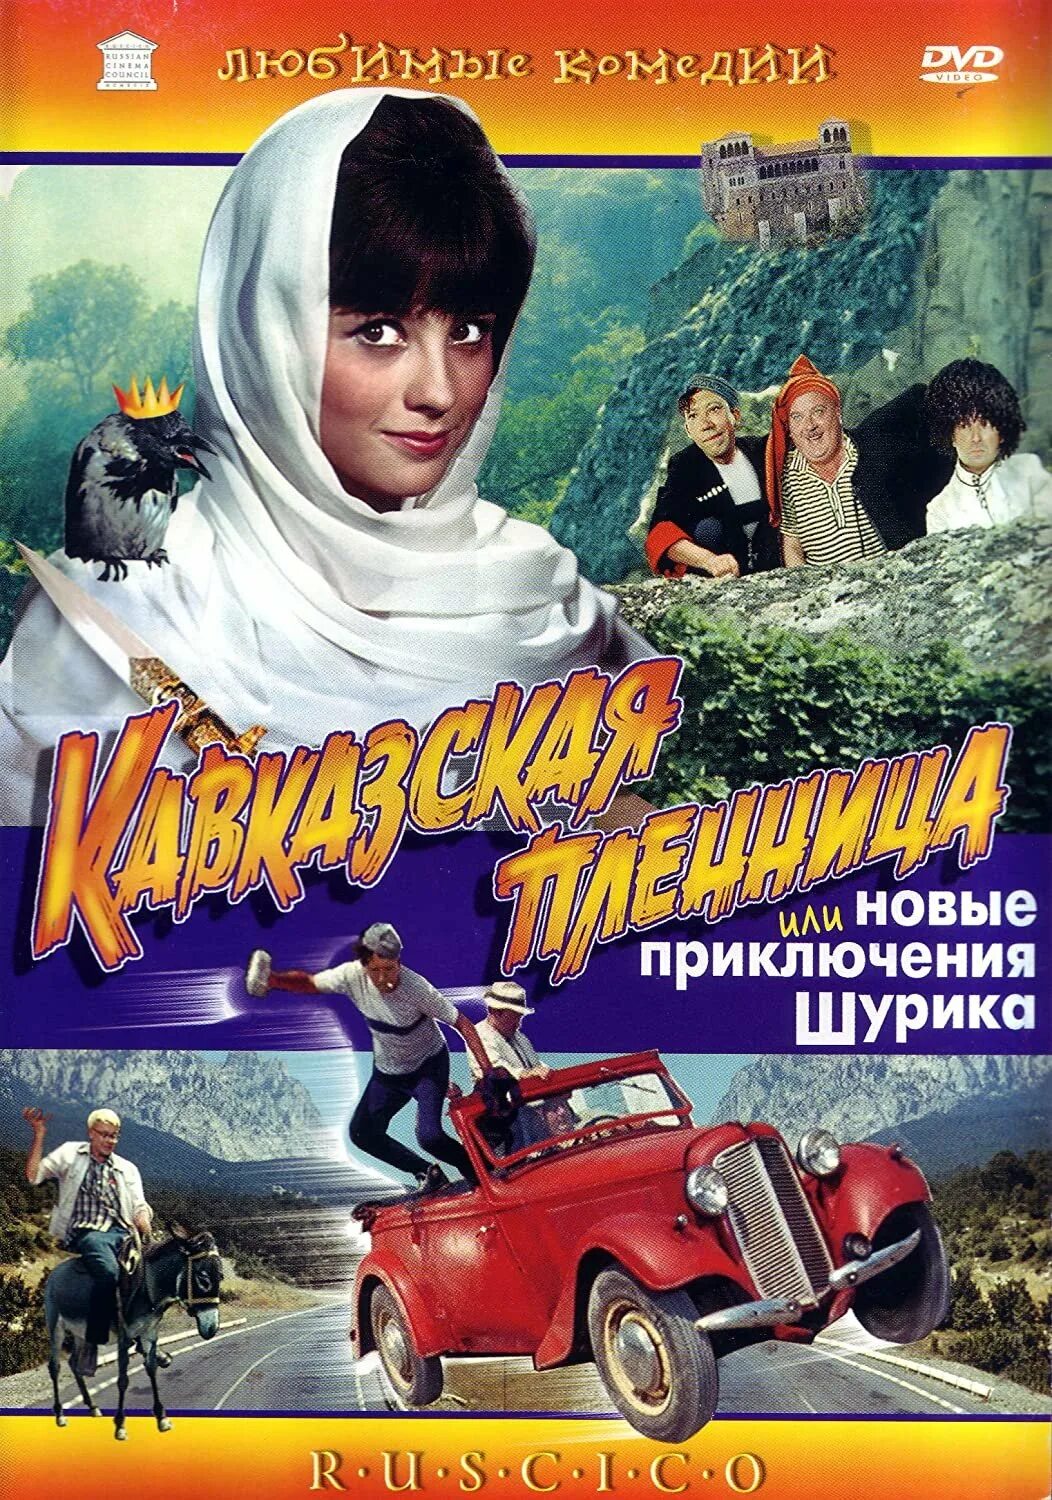 Кавказская племянница. Кавказская пленница 1966 DVD. Кавказская пленница (1967) Постер.